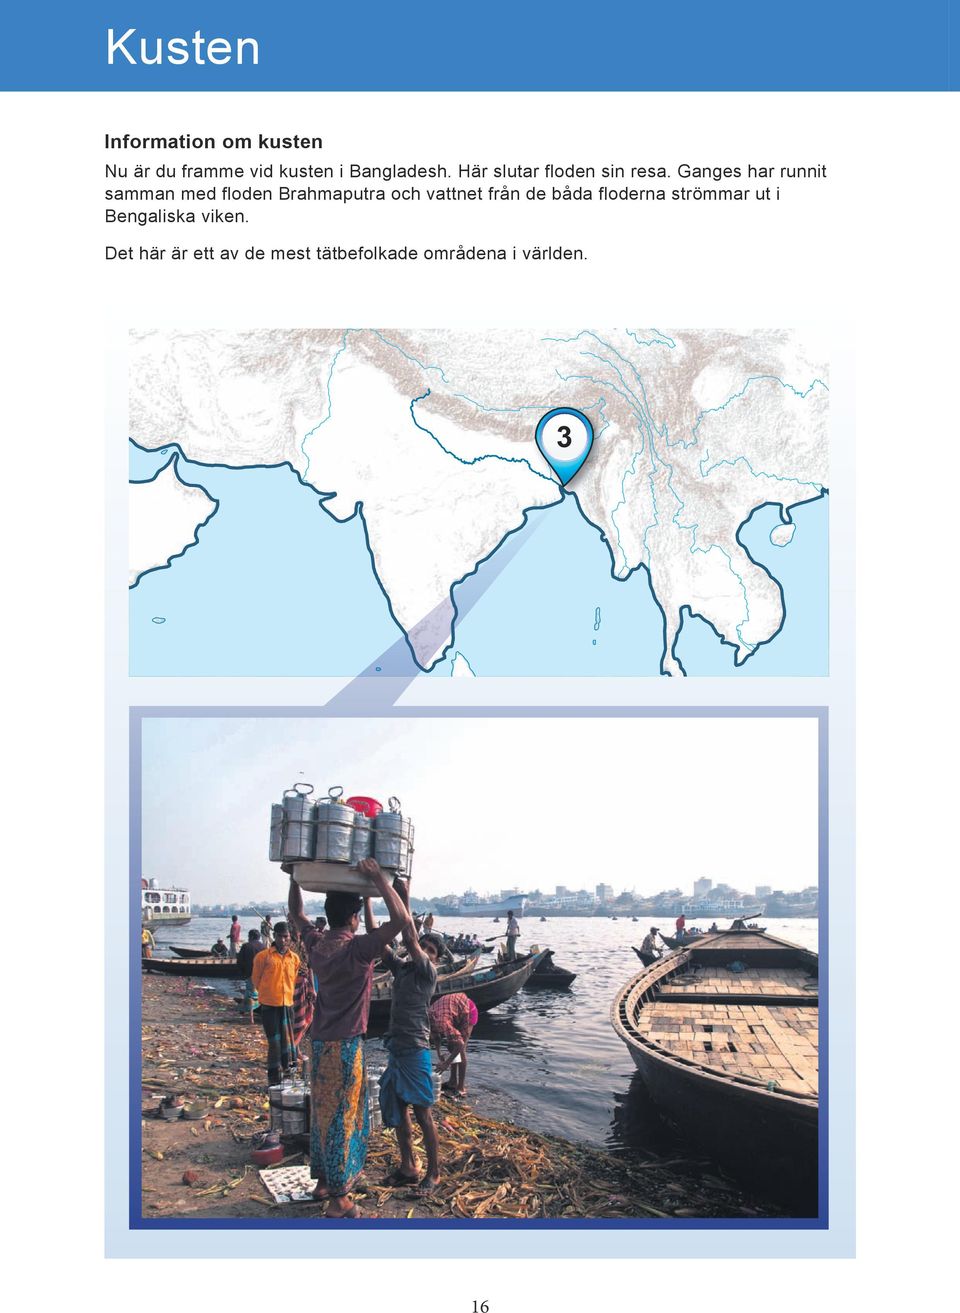 Ganges har runnit samman med floden Brahmaputra och vattnet från de